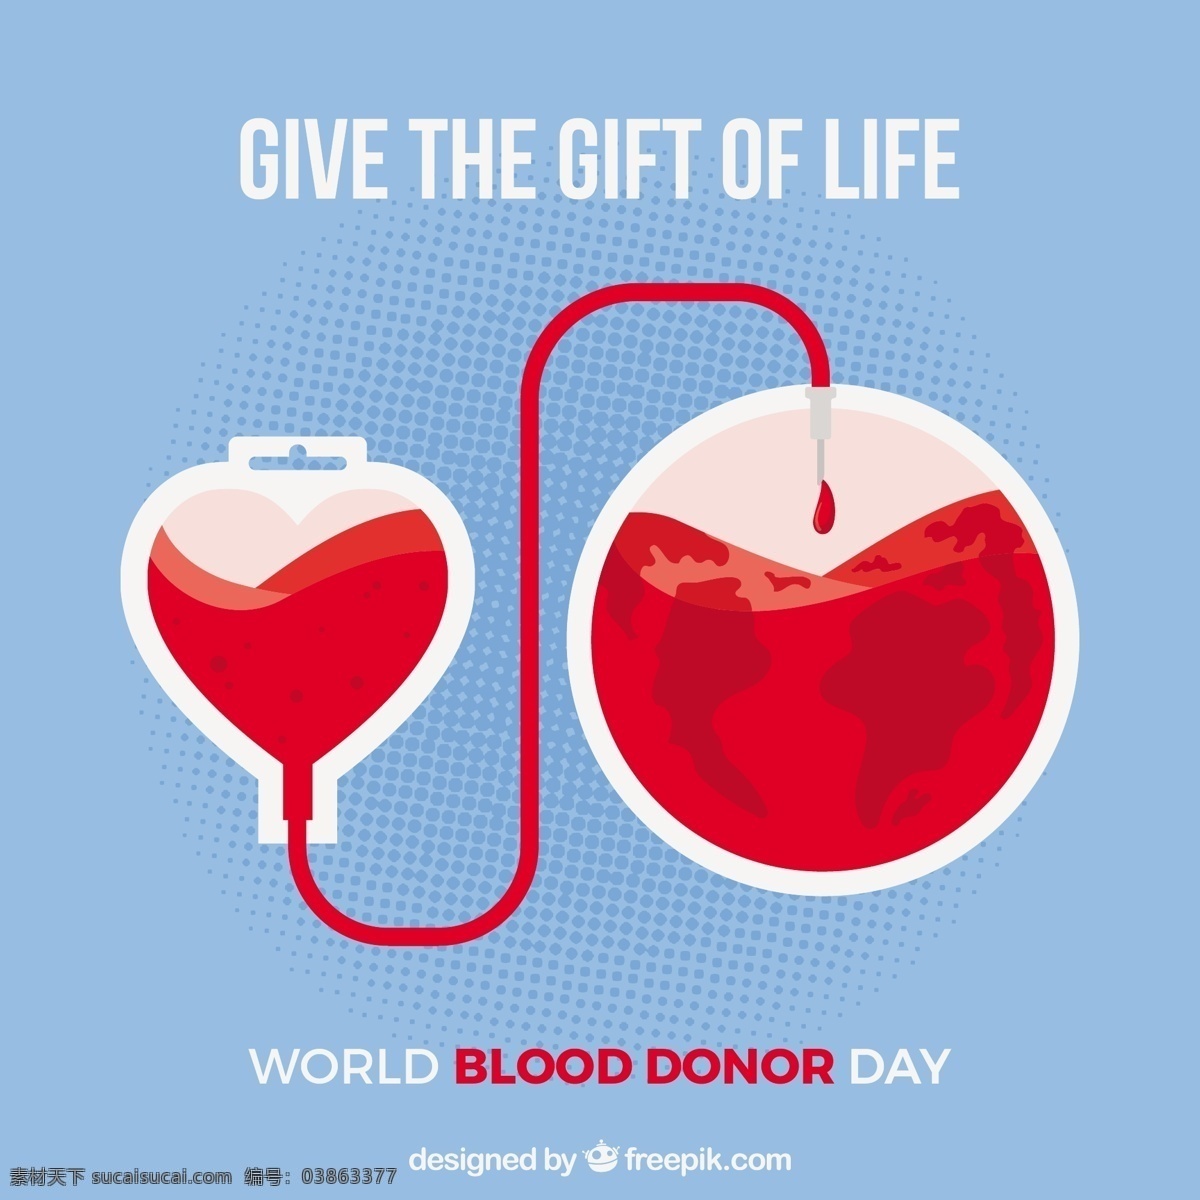 世界 献血者 日 输血 装置 图形 世界献血者日 输血装置